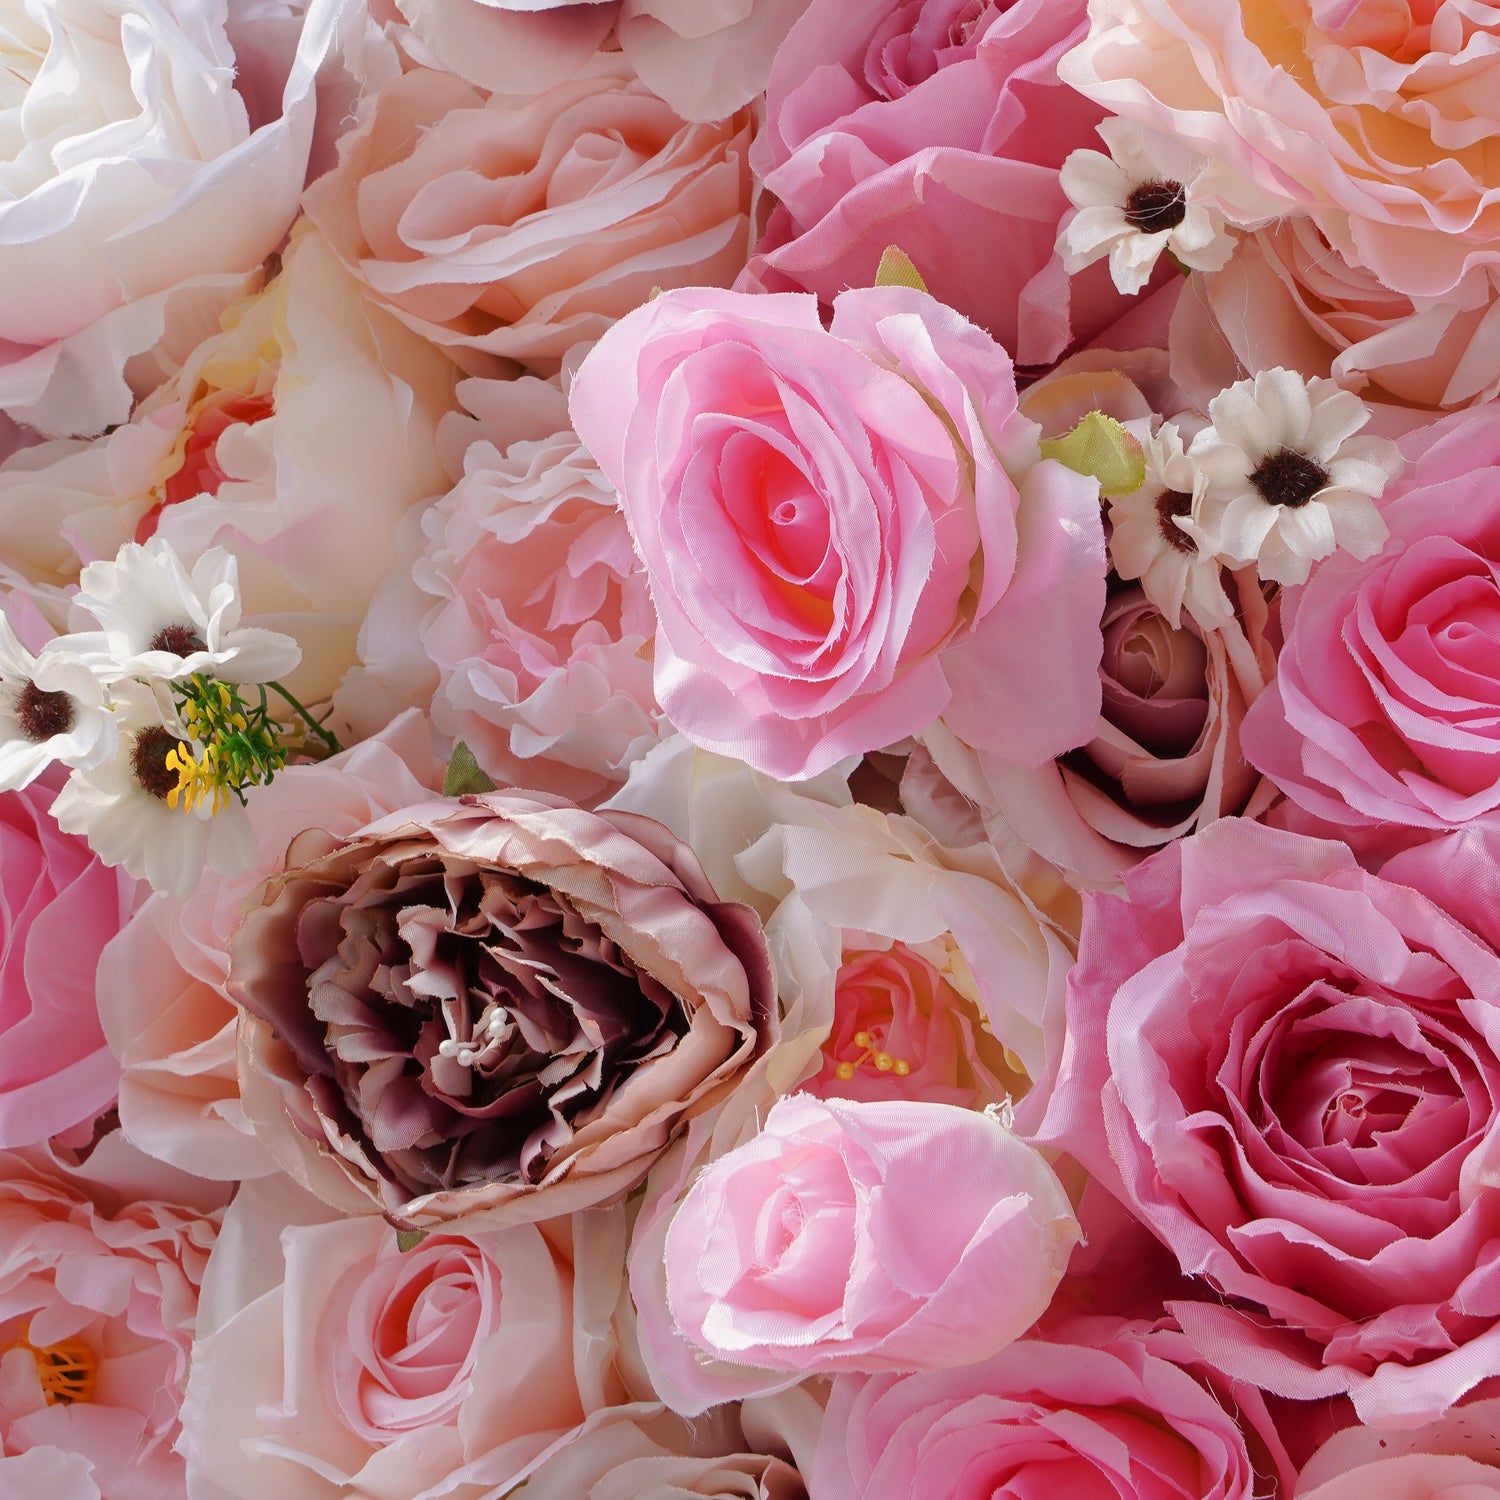  White and Pink Rose Morning Blush Botanical Flower T